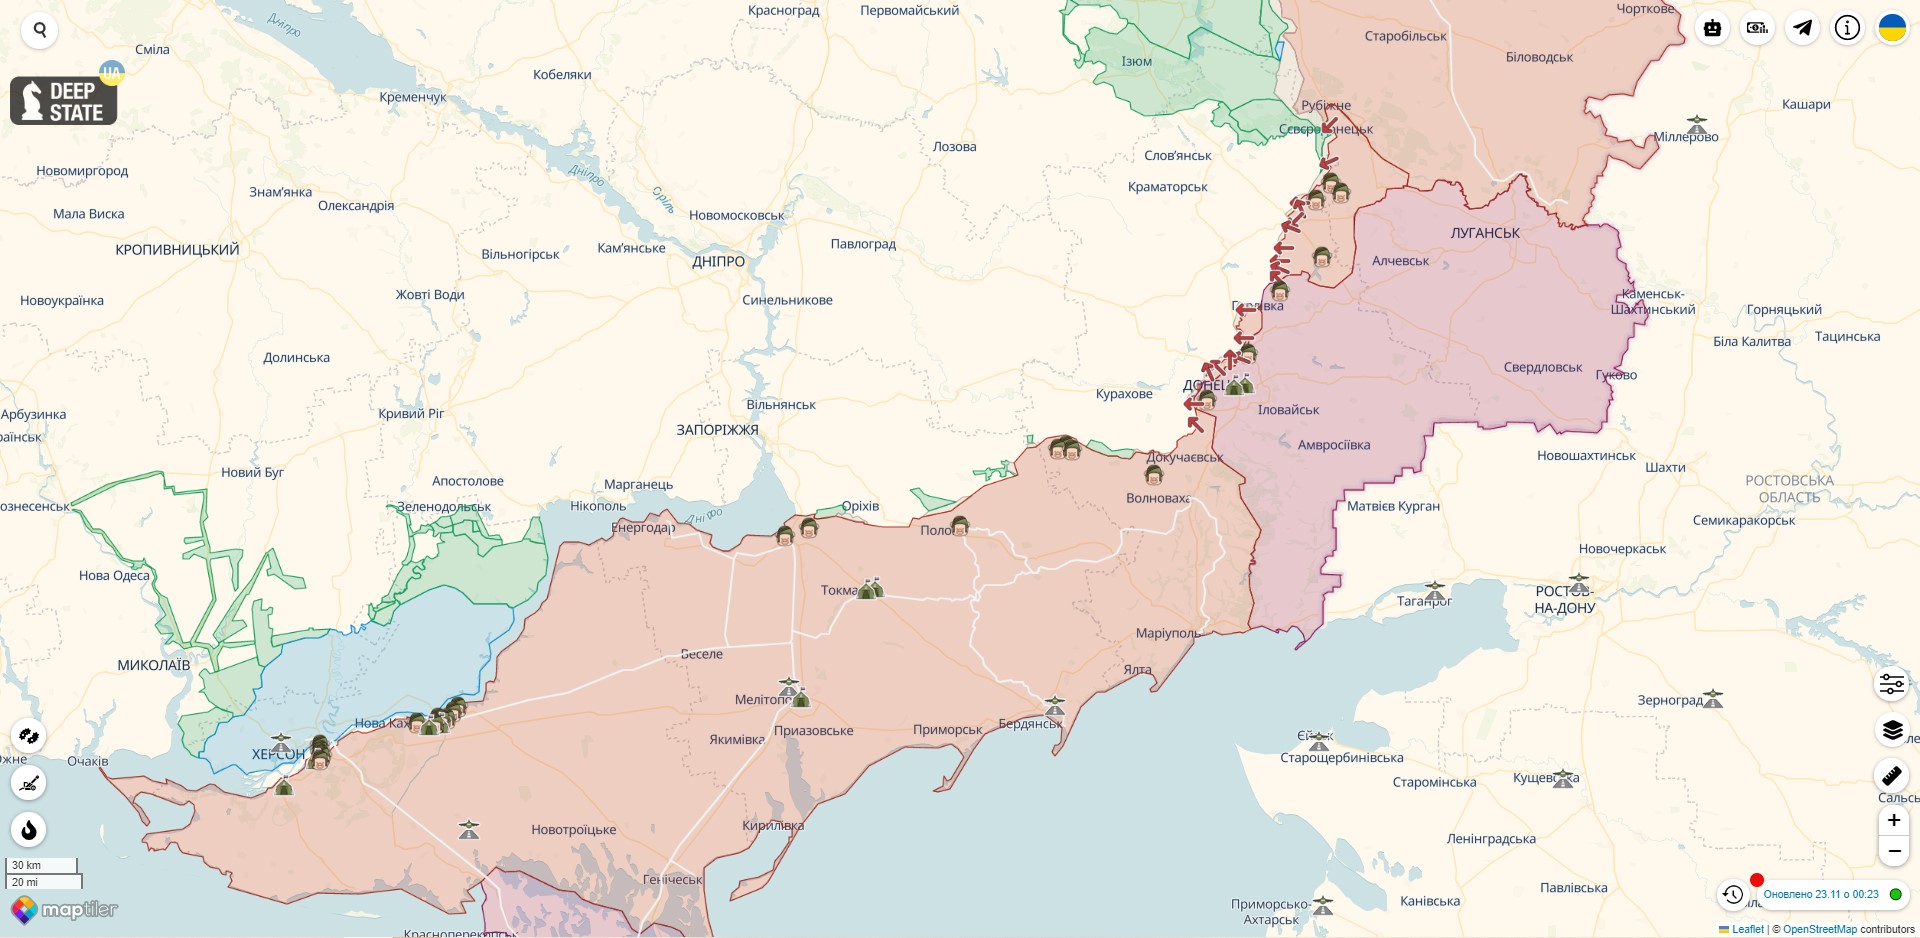 Мапа бойових дій проти російської агресії в Україні на 23 листопада